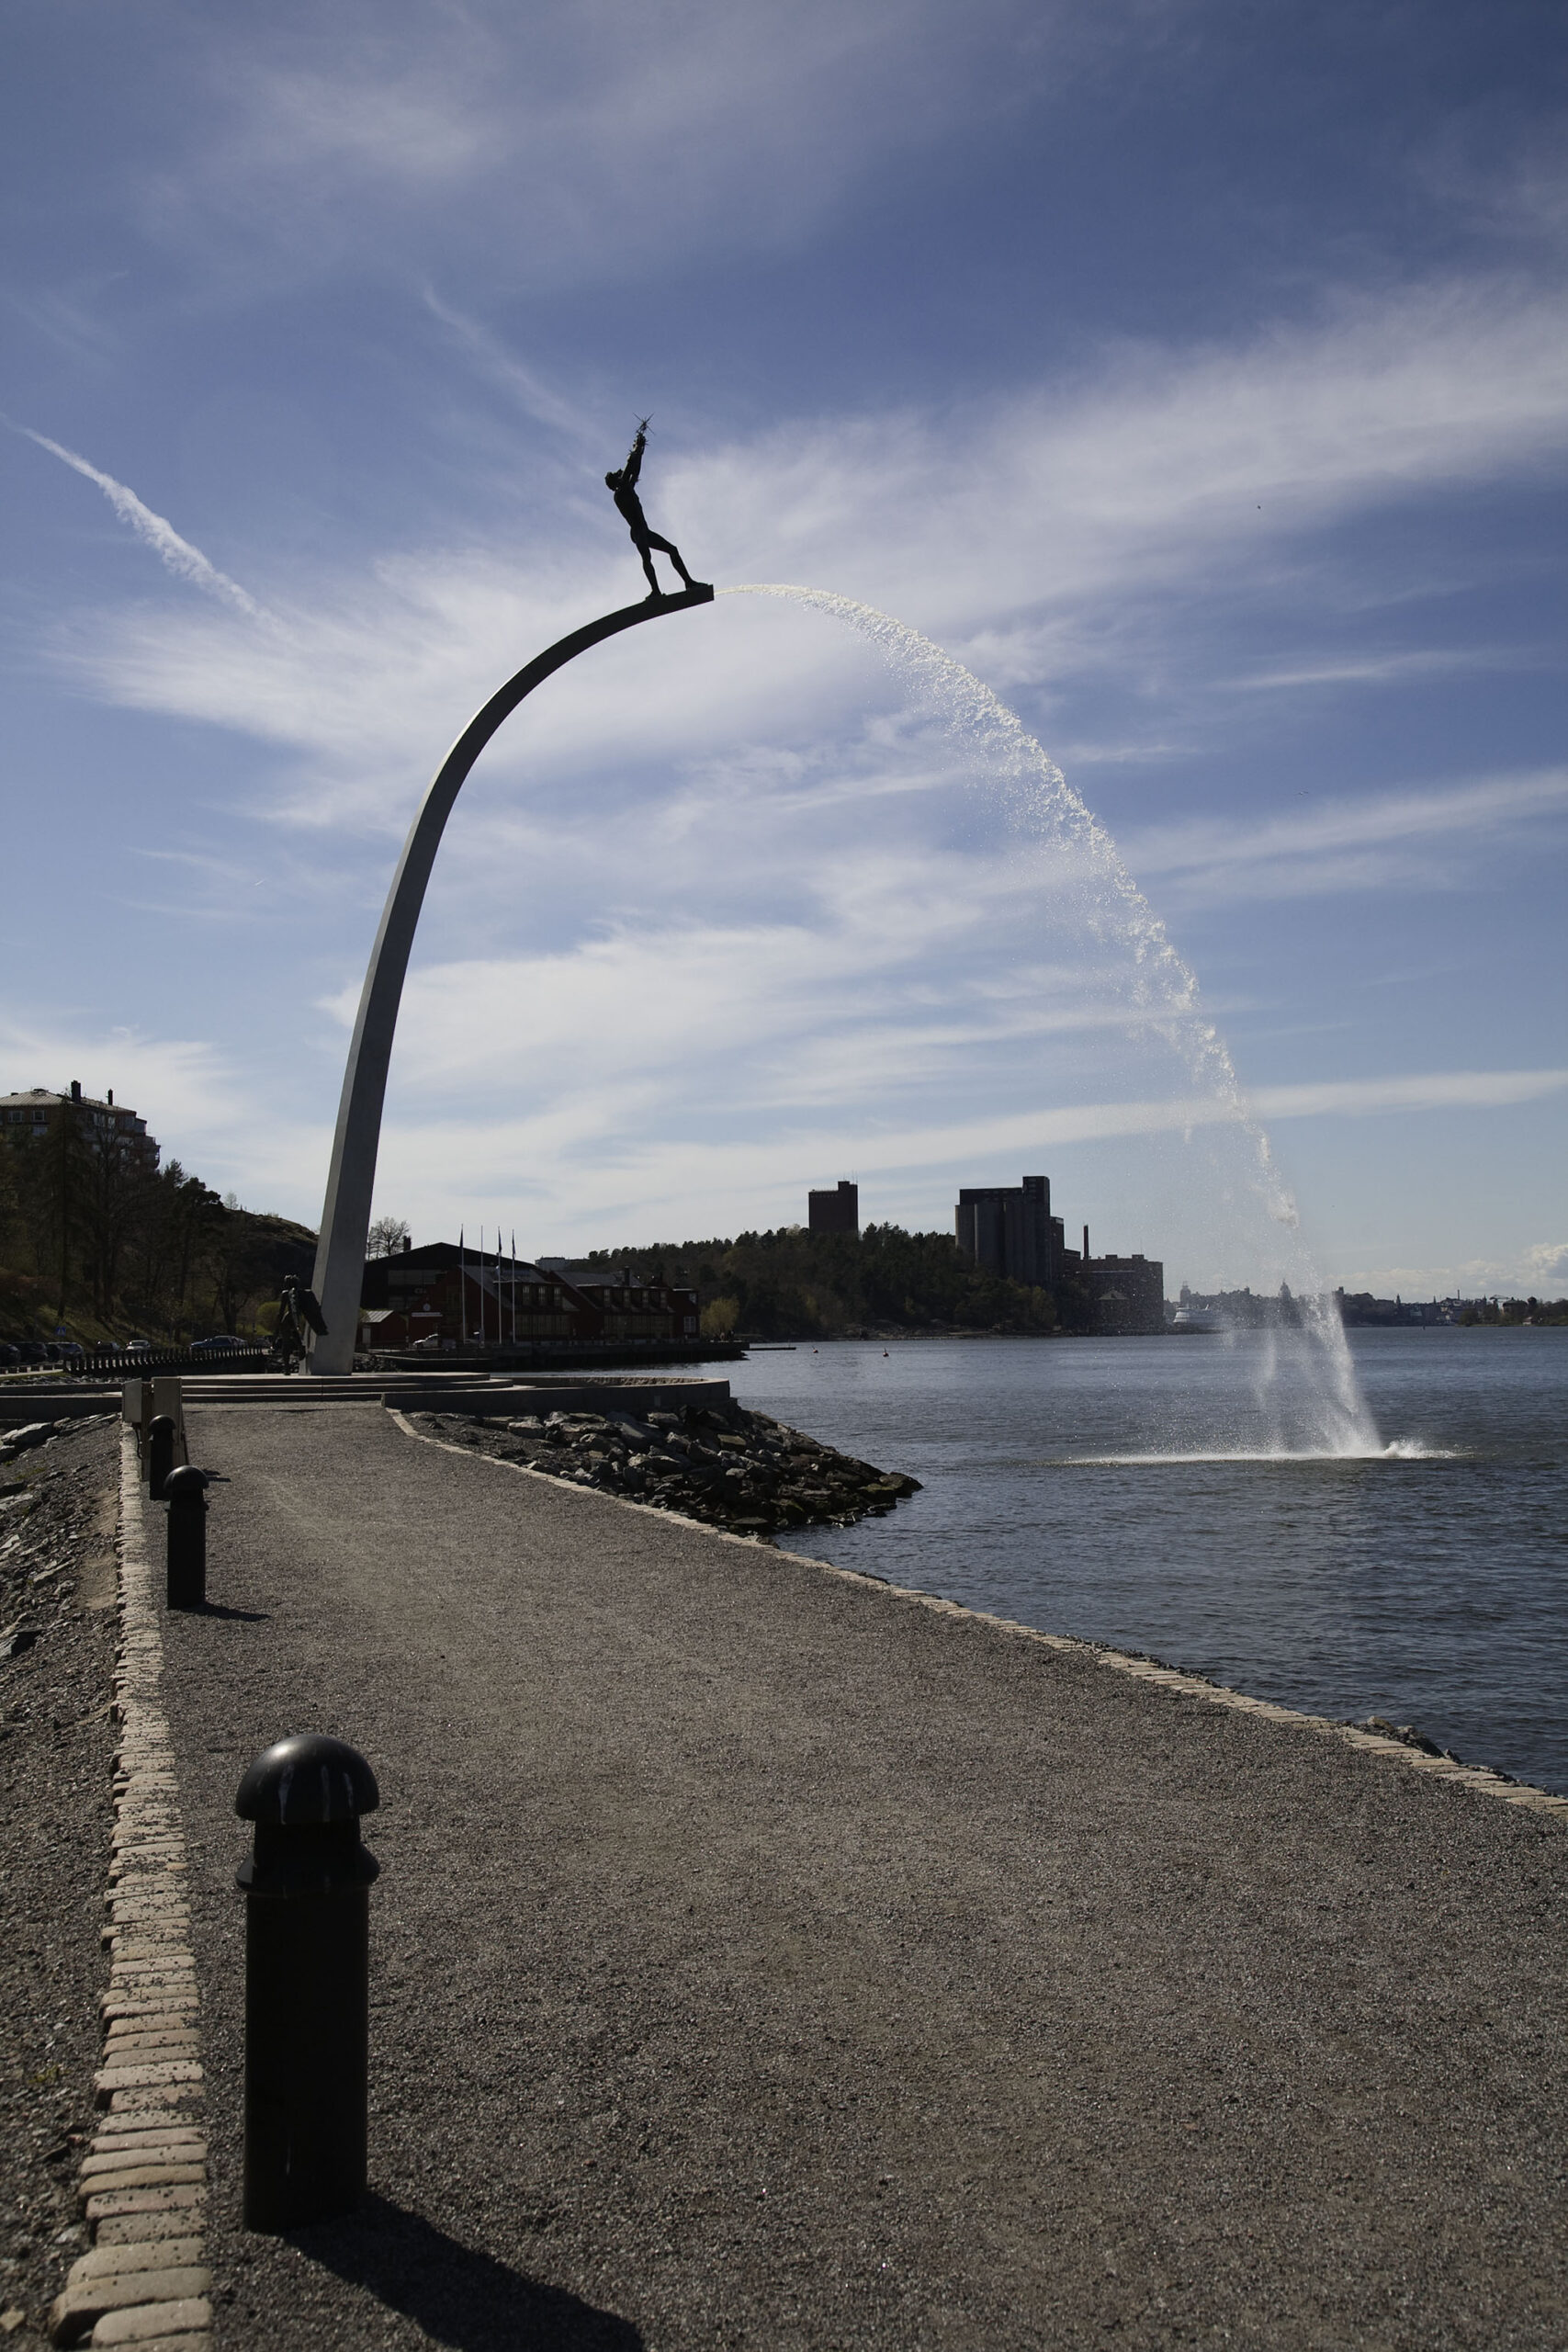 En båge över vattnet som sprutar vatten ur sig. Längst upp på bågen står en skulptur av en man. Silhuett av bebyggelse bakom.